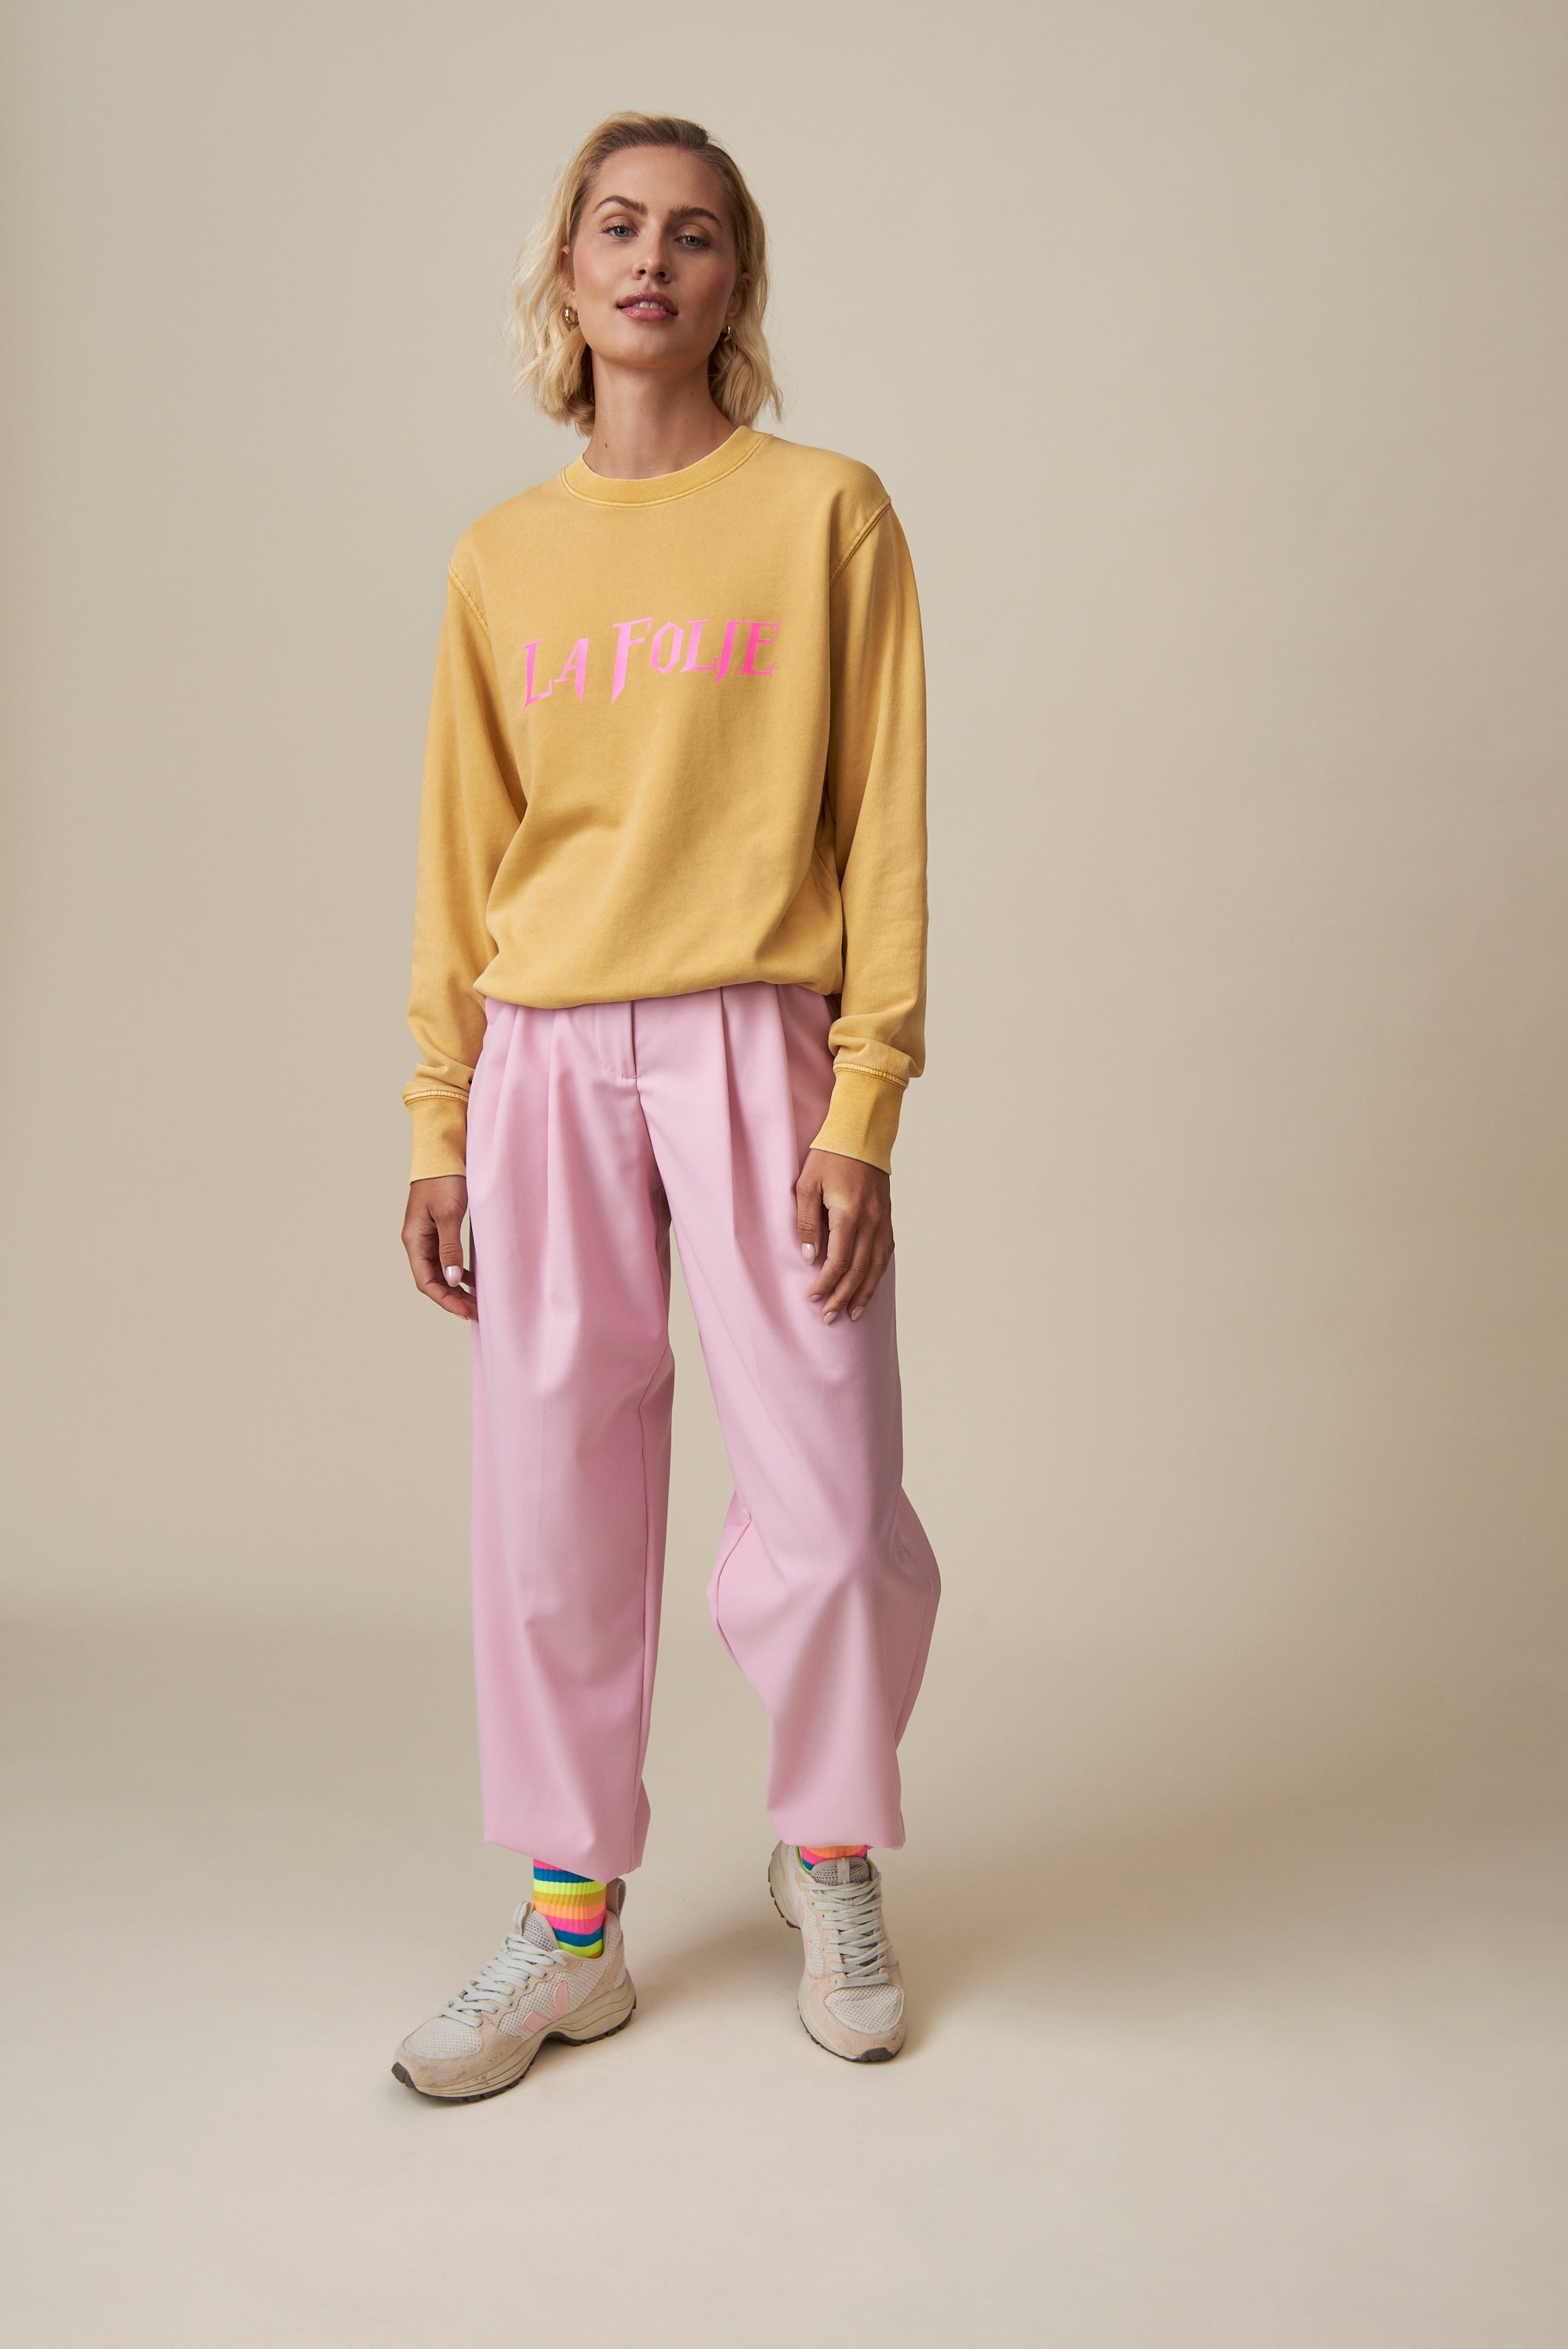 La Folie Sweatshirt - Ochre / Neon Pink